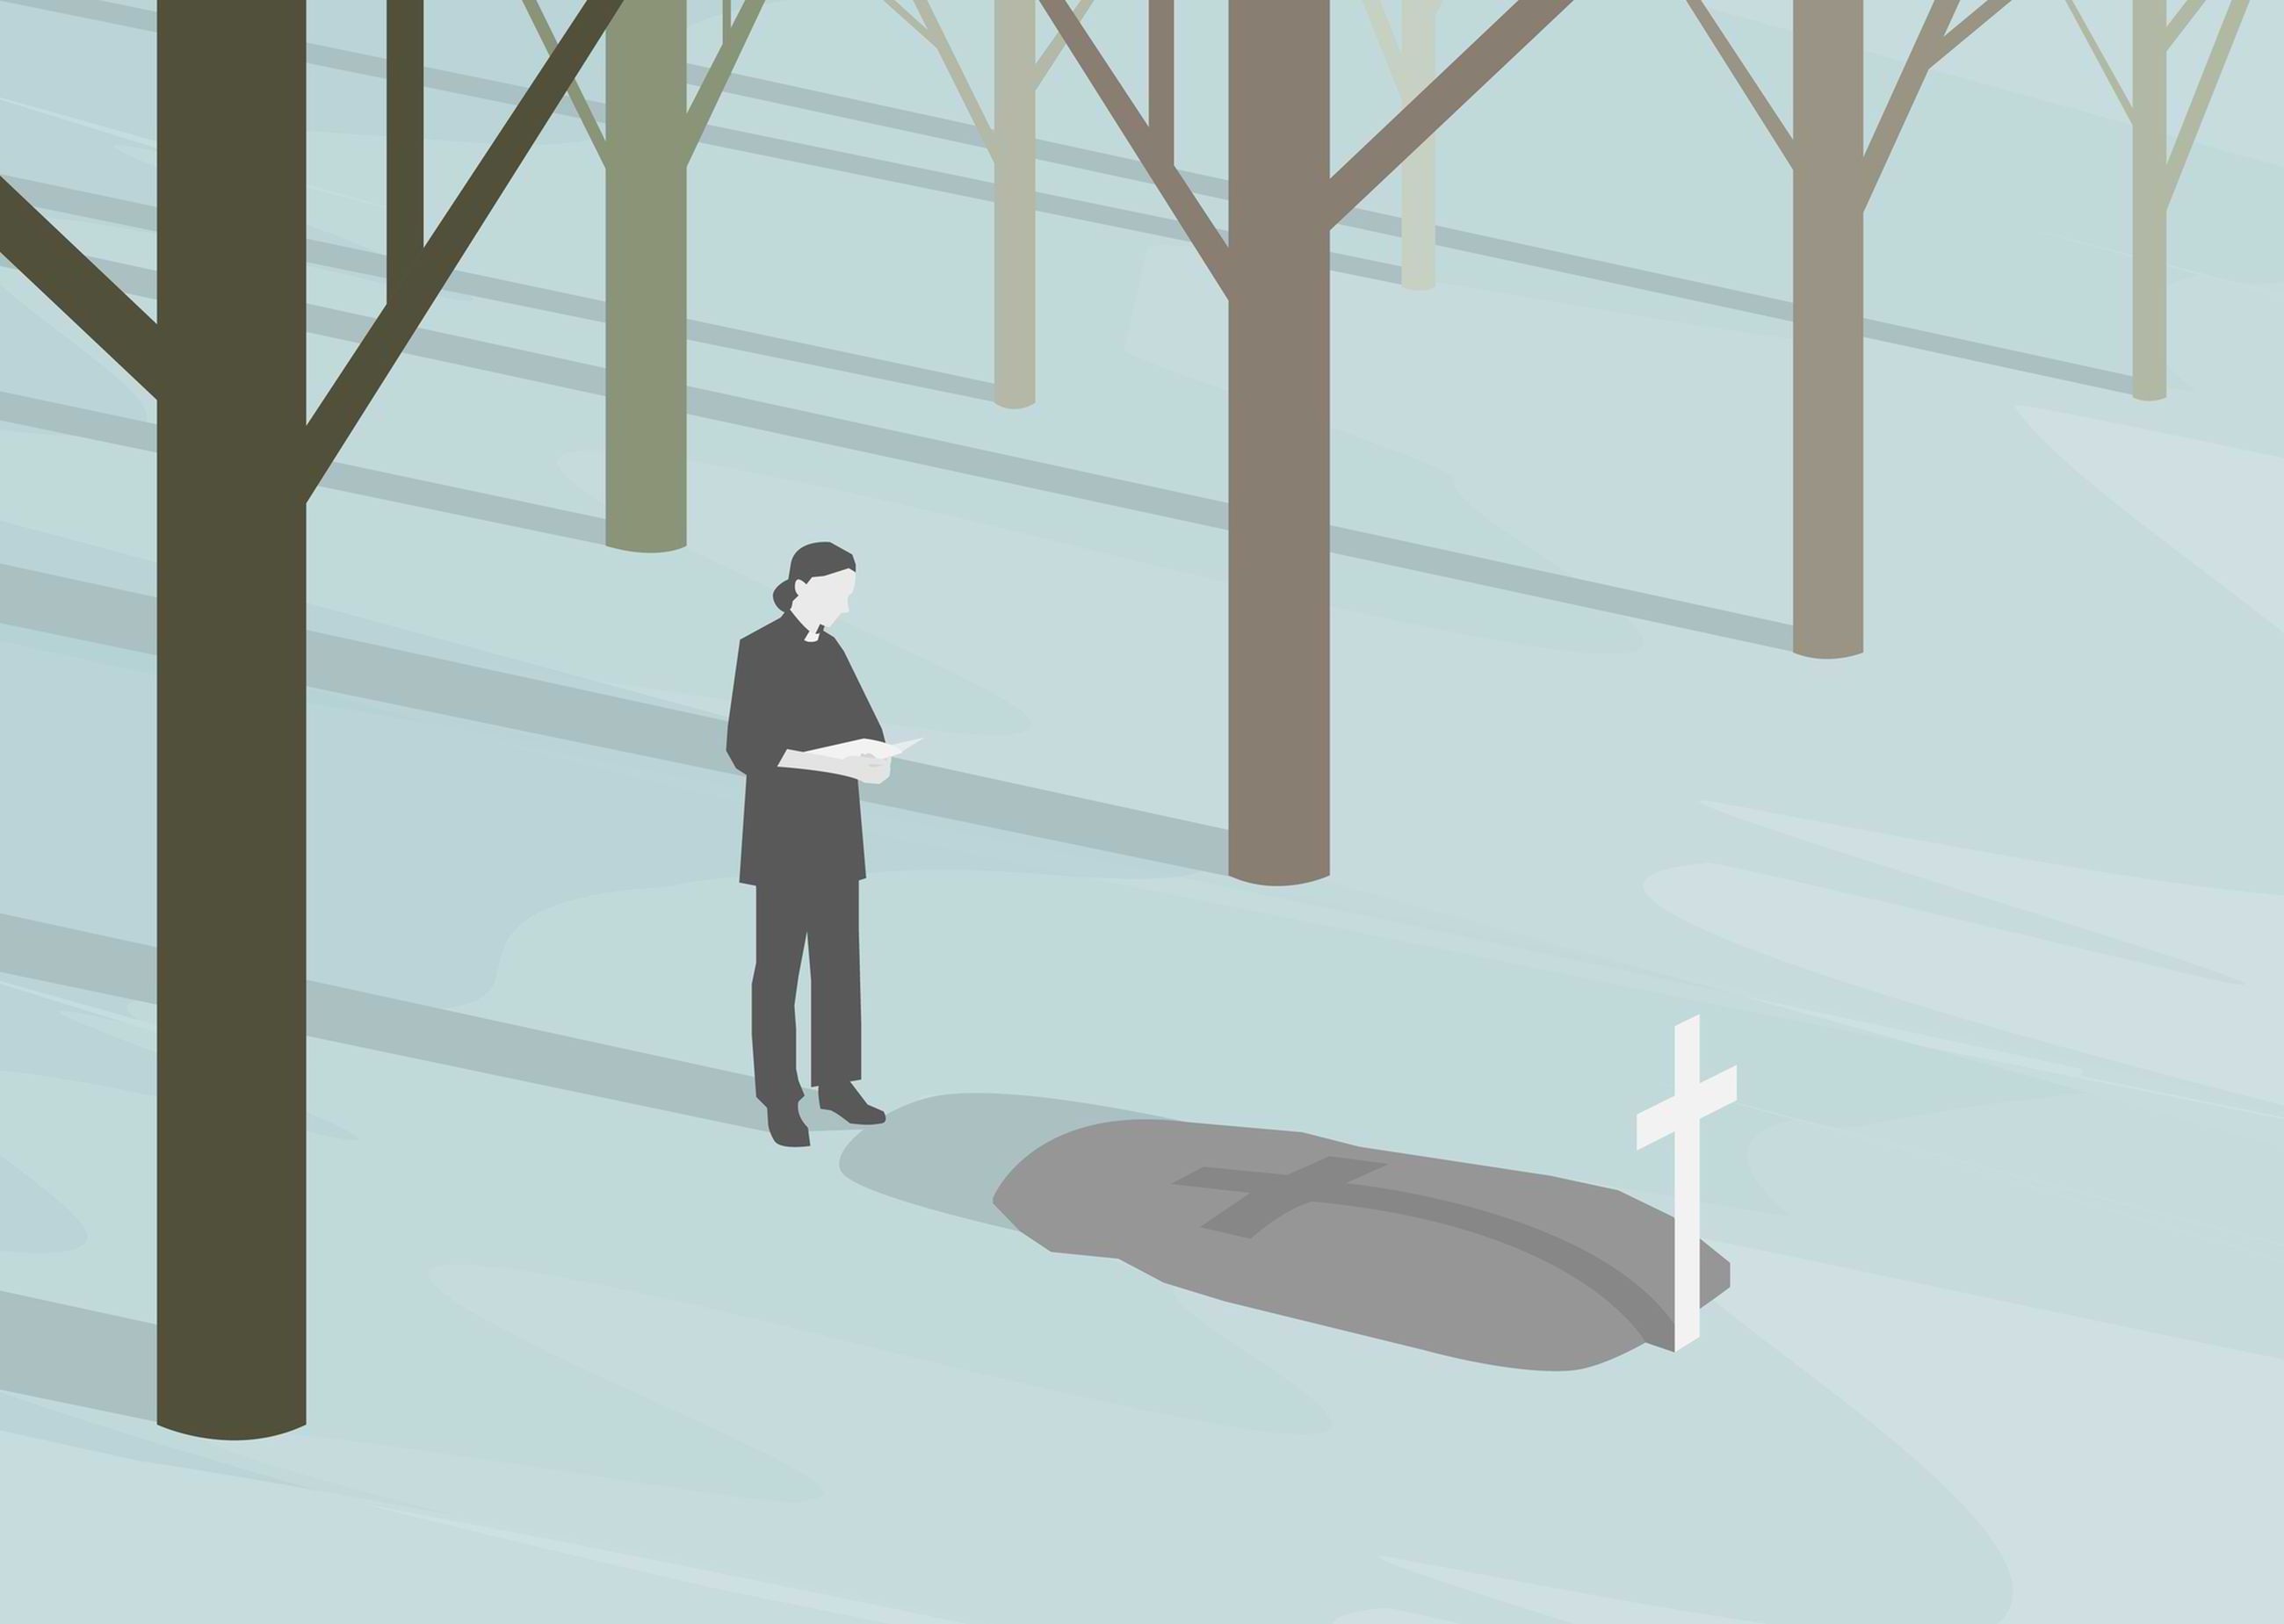 Millaiset hautajaiset saa vainaja, jolla ei ole omaisia? - 15 minuuttia ja  maksettuja vieraita: ”Kyllä se koskettaa pappiakin” | Koillissanomat